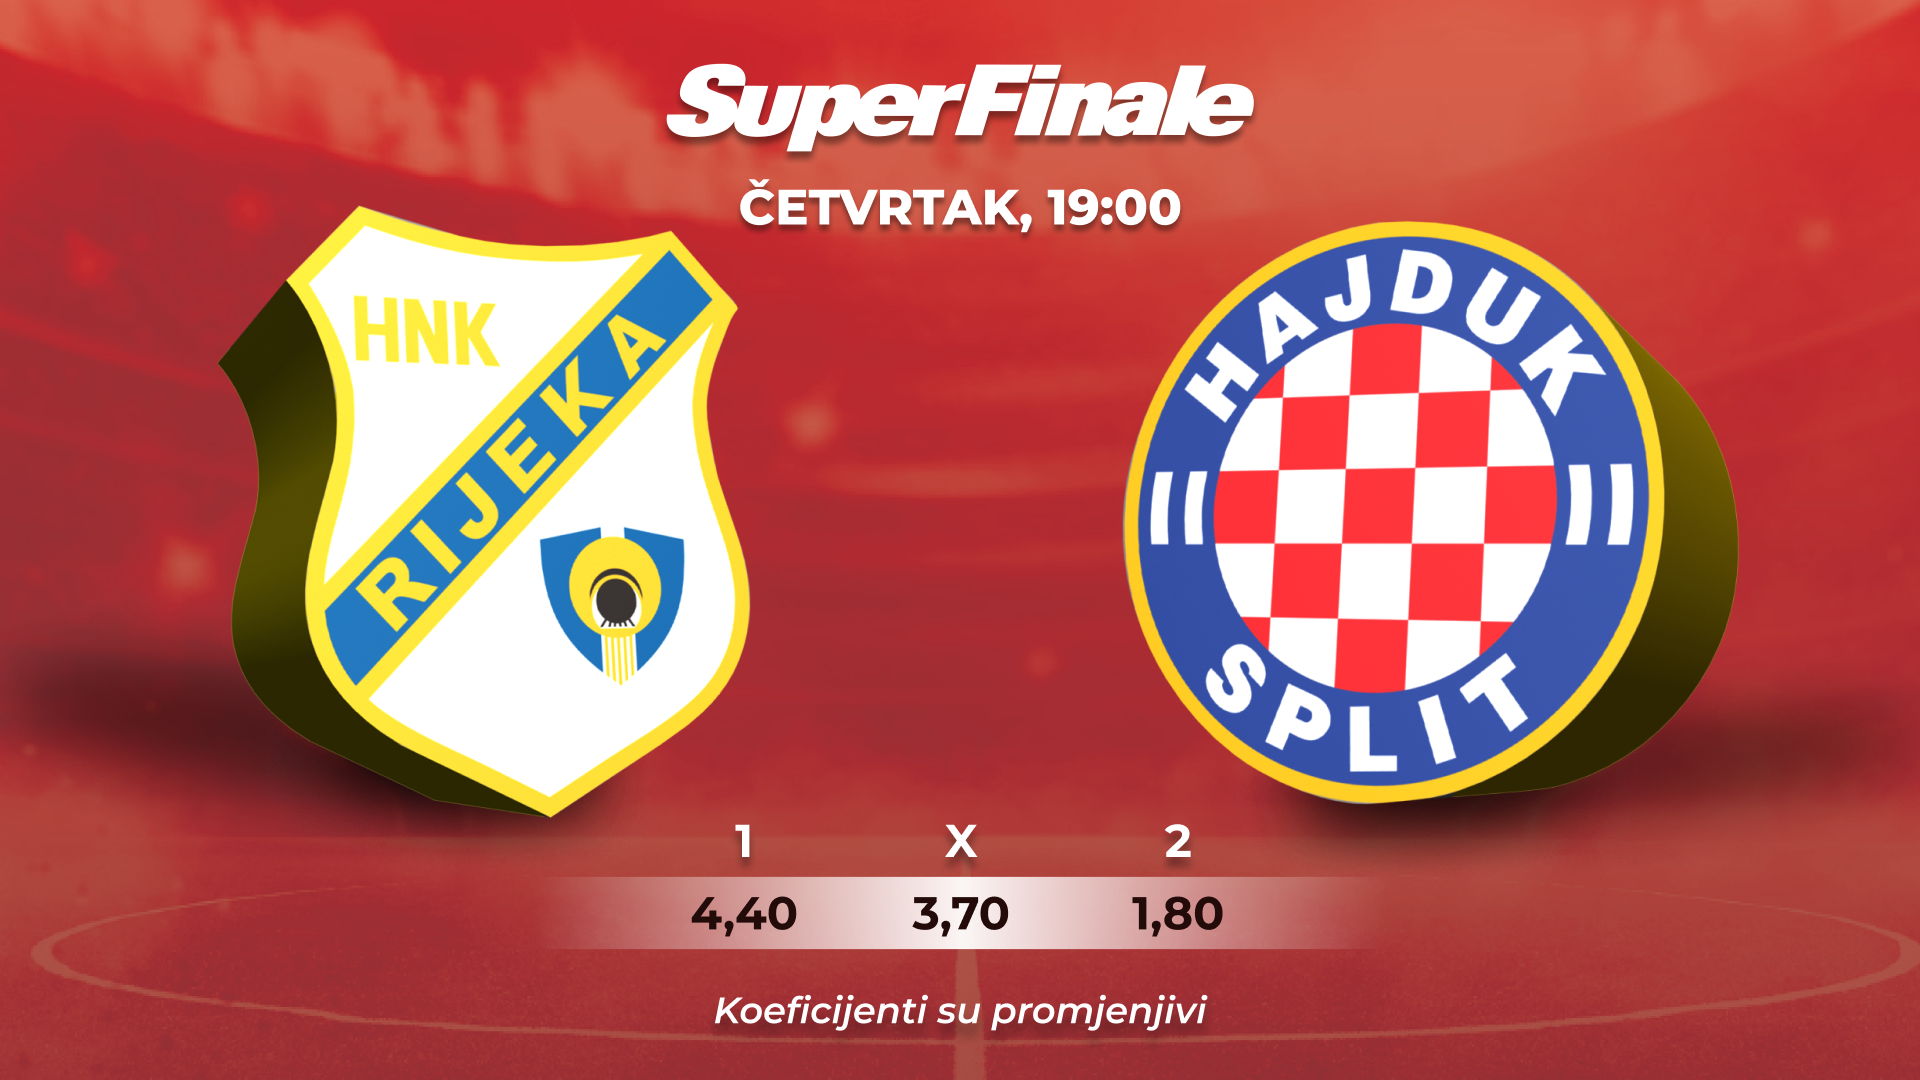 SuperSport Hrvatski kup (Finale): HNK Rijeka - HNK Hajduk Split UŽIVO 